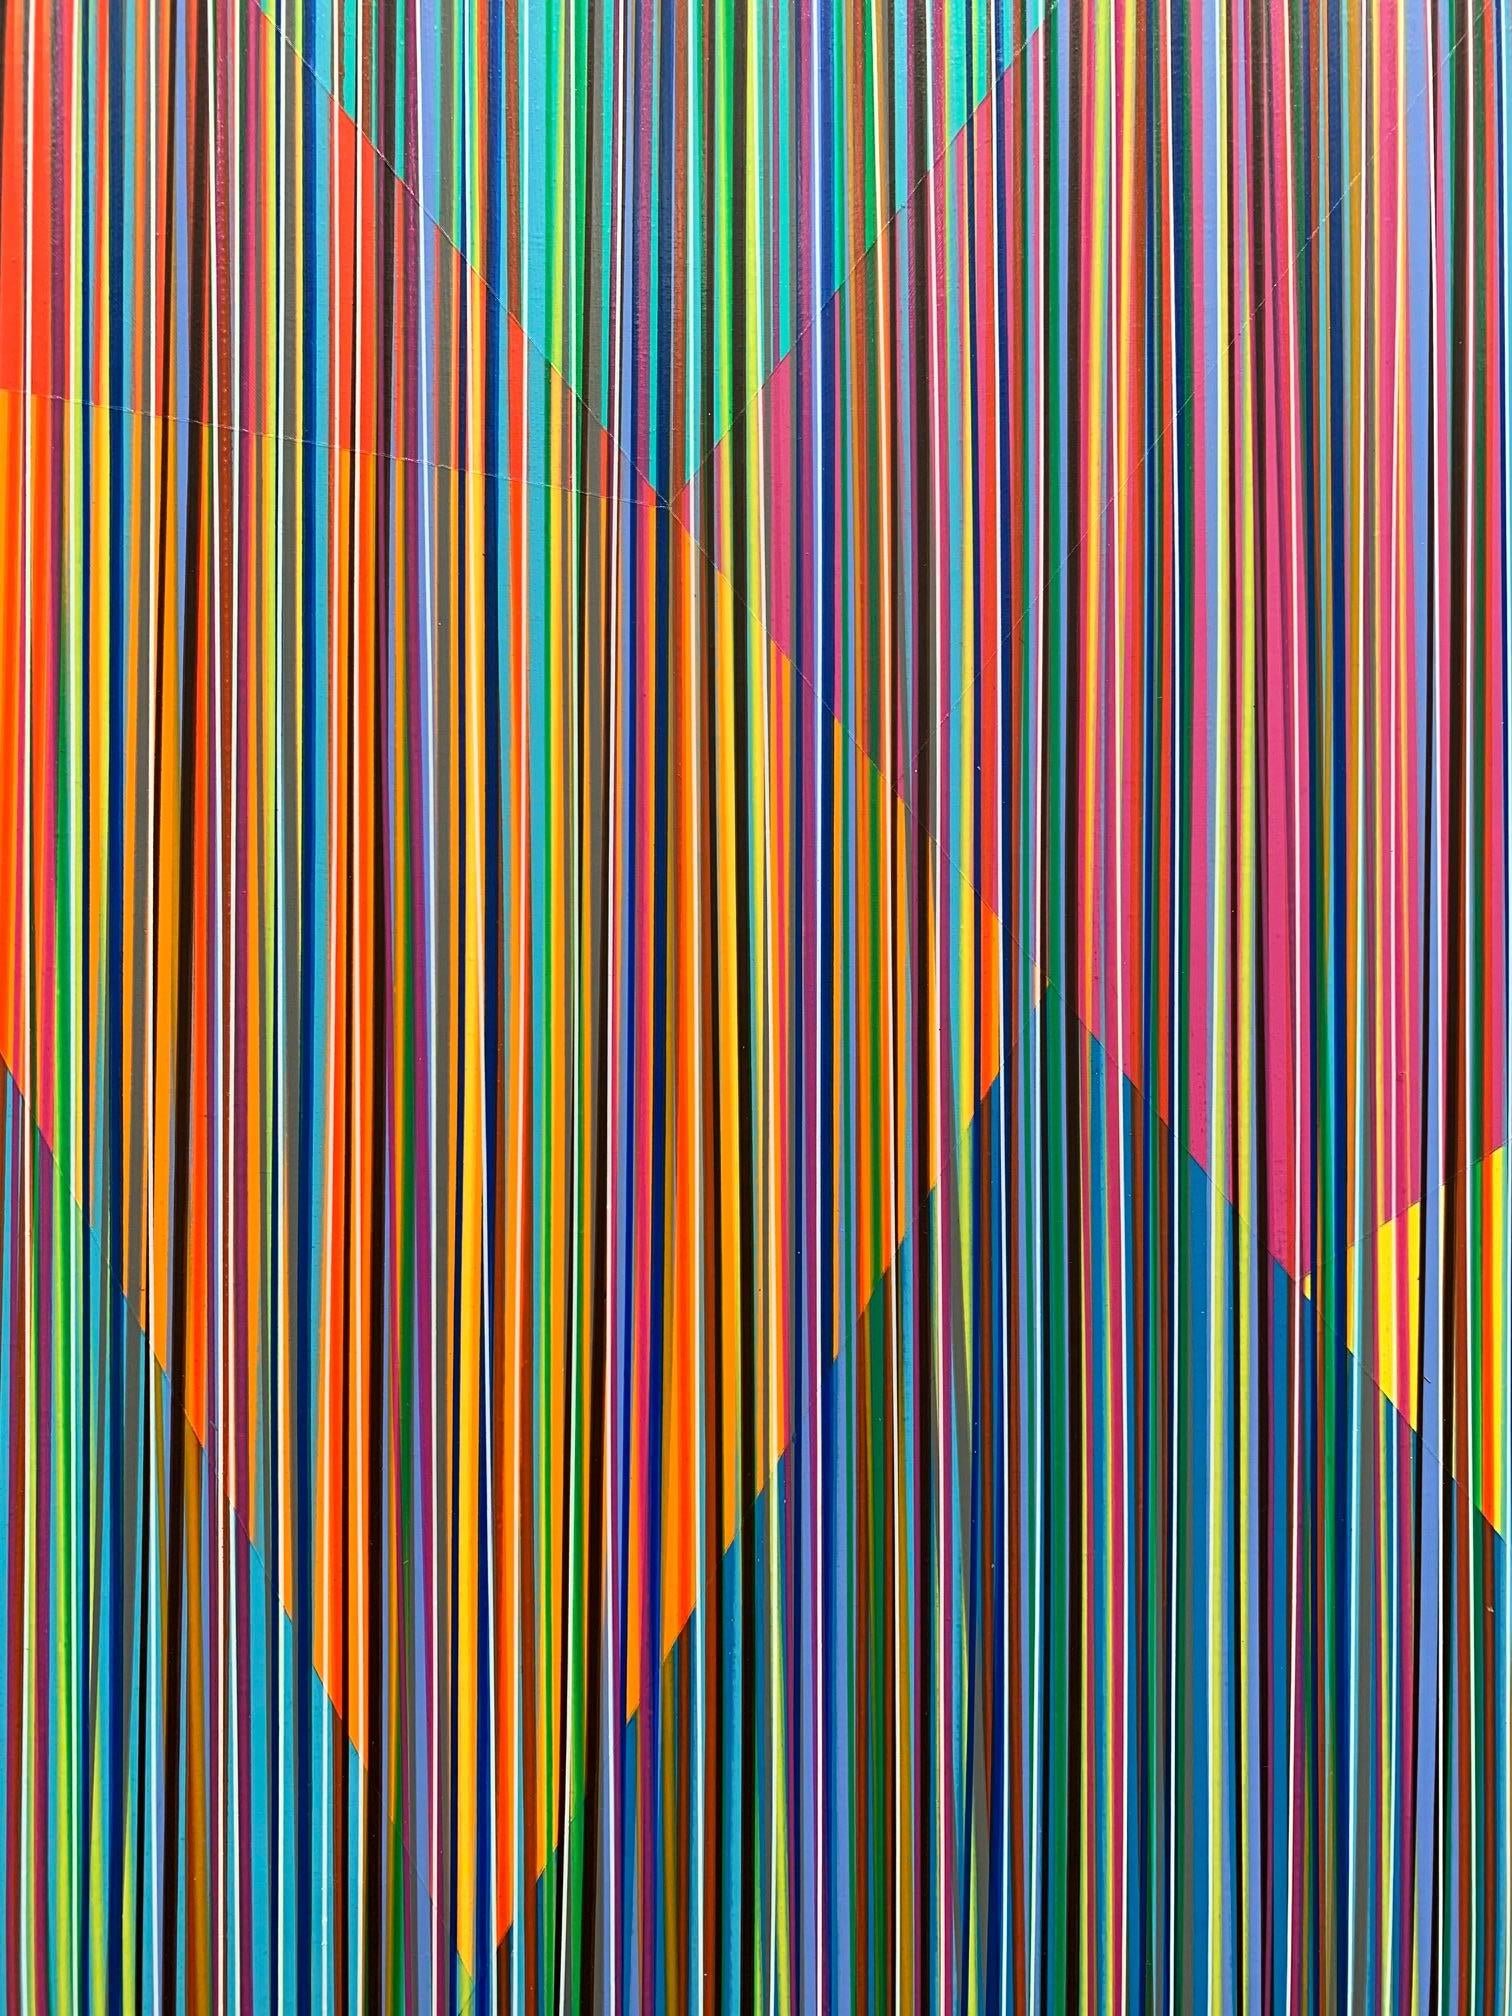 Tomorrow's Girls, Zeitgenössisches, Abstraktes, minimalistisches Acrylgemälde (Geometrische Abstraktion), Painting, von Bradley Harms